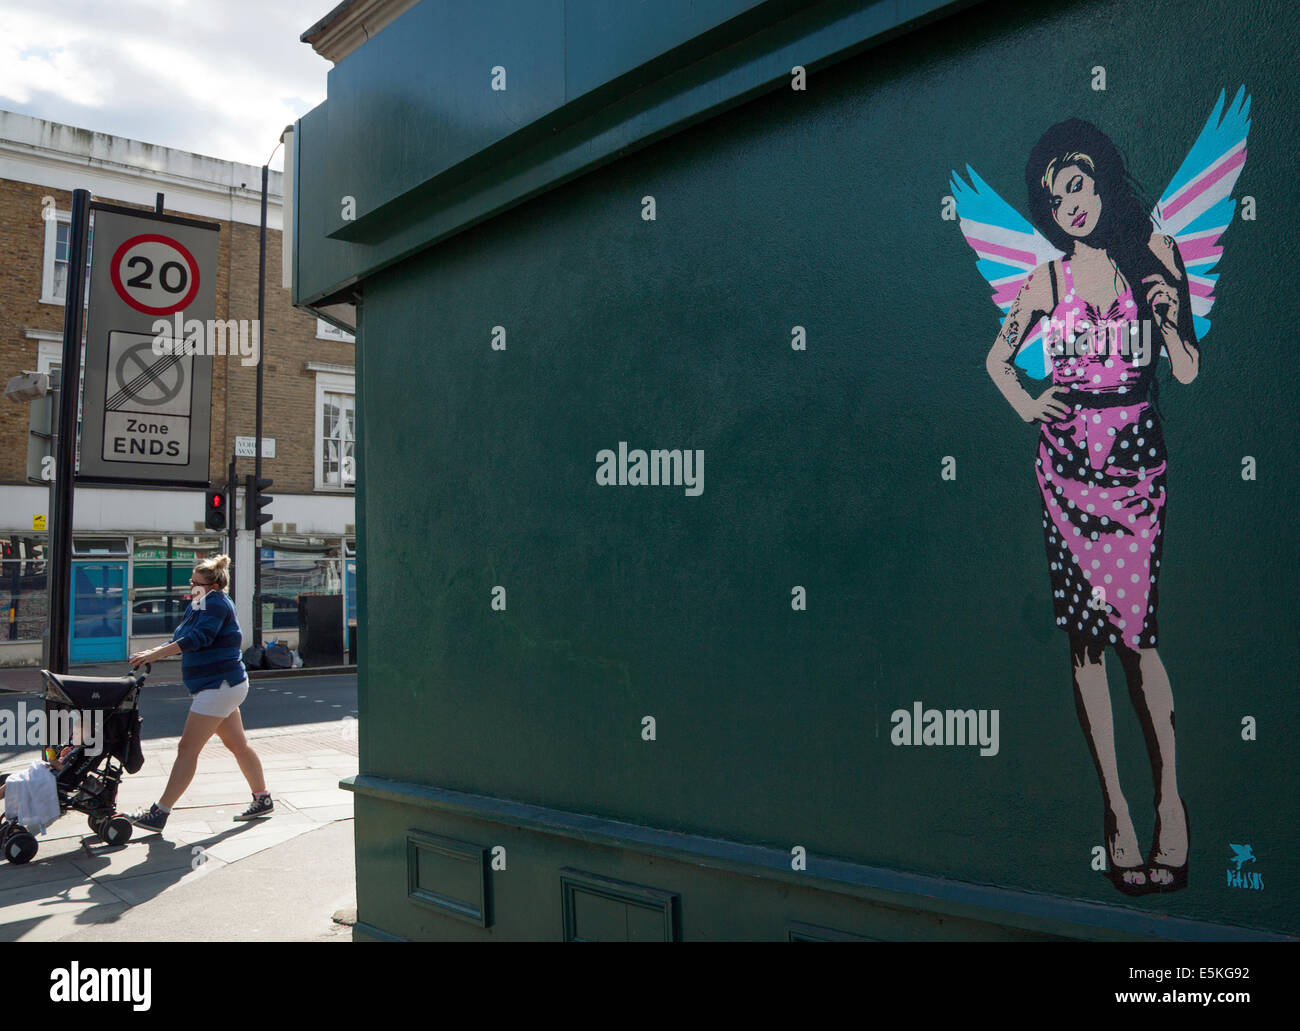 Londres, Royaume-Uni. 06Th Août, 2014. L'artiste graffiti Londres Pegasus a peint un nouveau morceau de la chanteuse Amy Winehouse en retard. Le travail, qui lui montre le port Union Jack Angel's Wings, est apparue sur le côté du magasin d'antiquités Paul's Emporium dans le nord de Londres non loin de l'ancienne maison de la chanteuse à Camden Town. Né à l'américaine Pegasus a peint plusieurs portraits de ses mais dit que ce nouveau morceau est son "dernier adieu" pour la chanteuse qui est décédé il y a plus de trois ans. Crédit : Jeffrey Blackler/Alamy Live News Banque D'Images